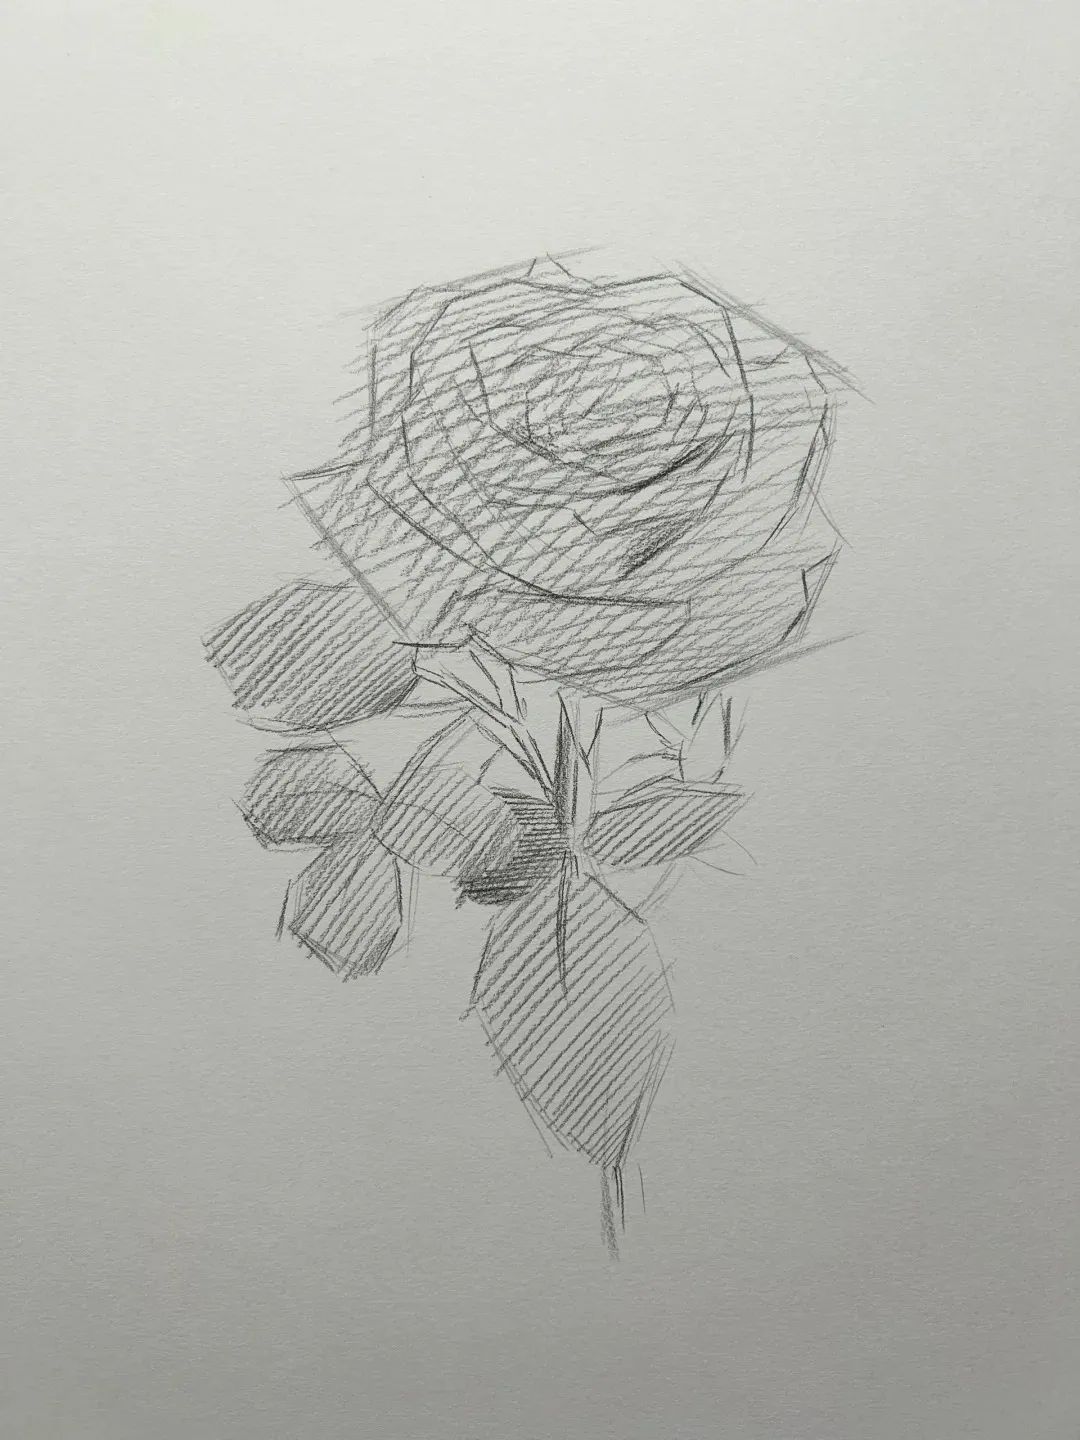 玫瑰铅笔画简笔画图片